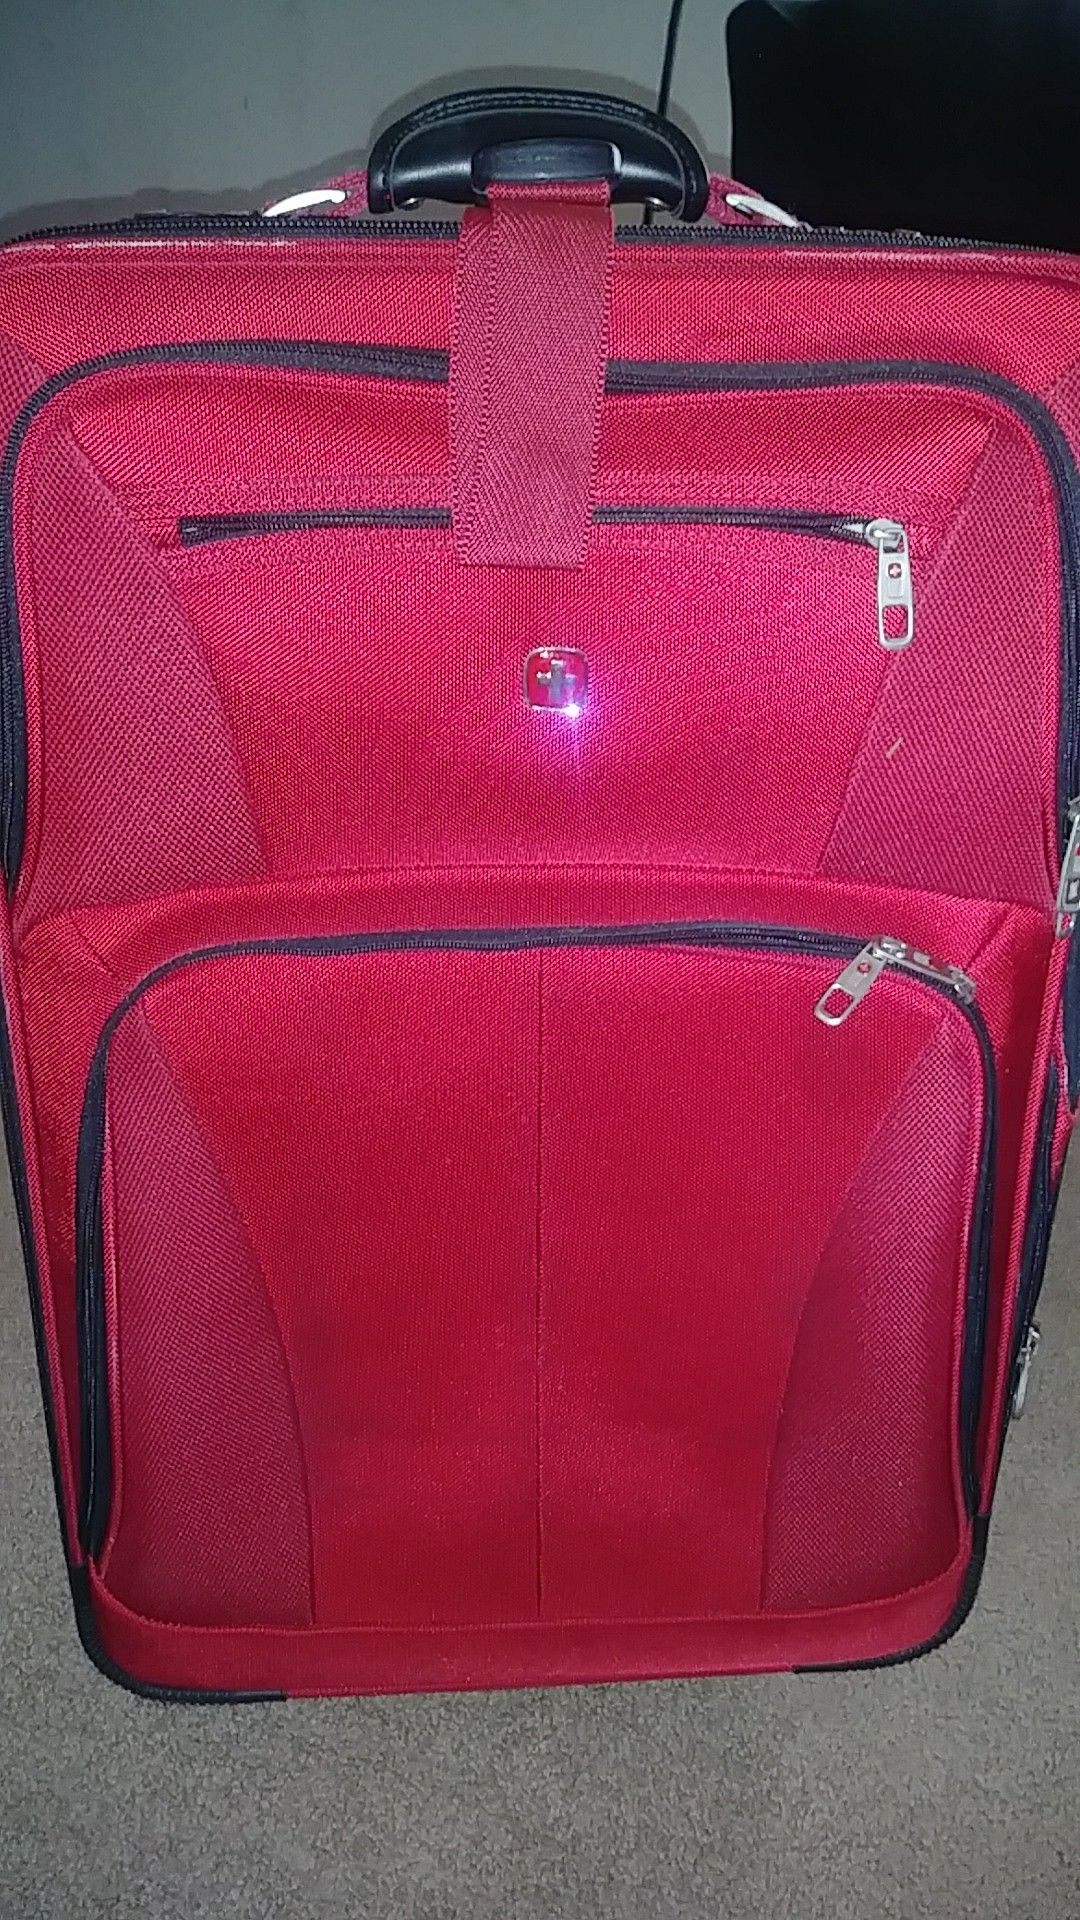 Swiss Gear suitcase